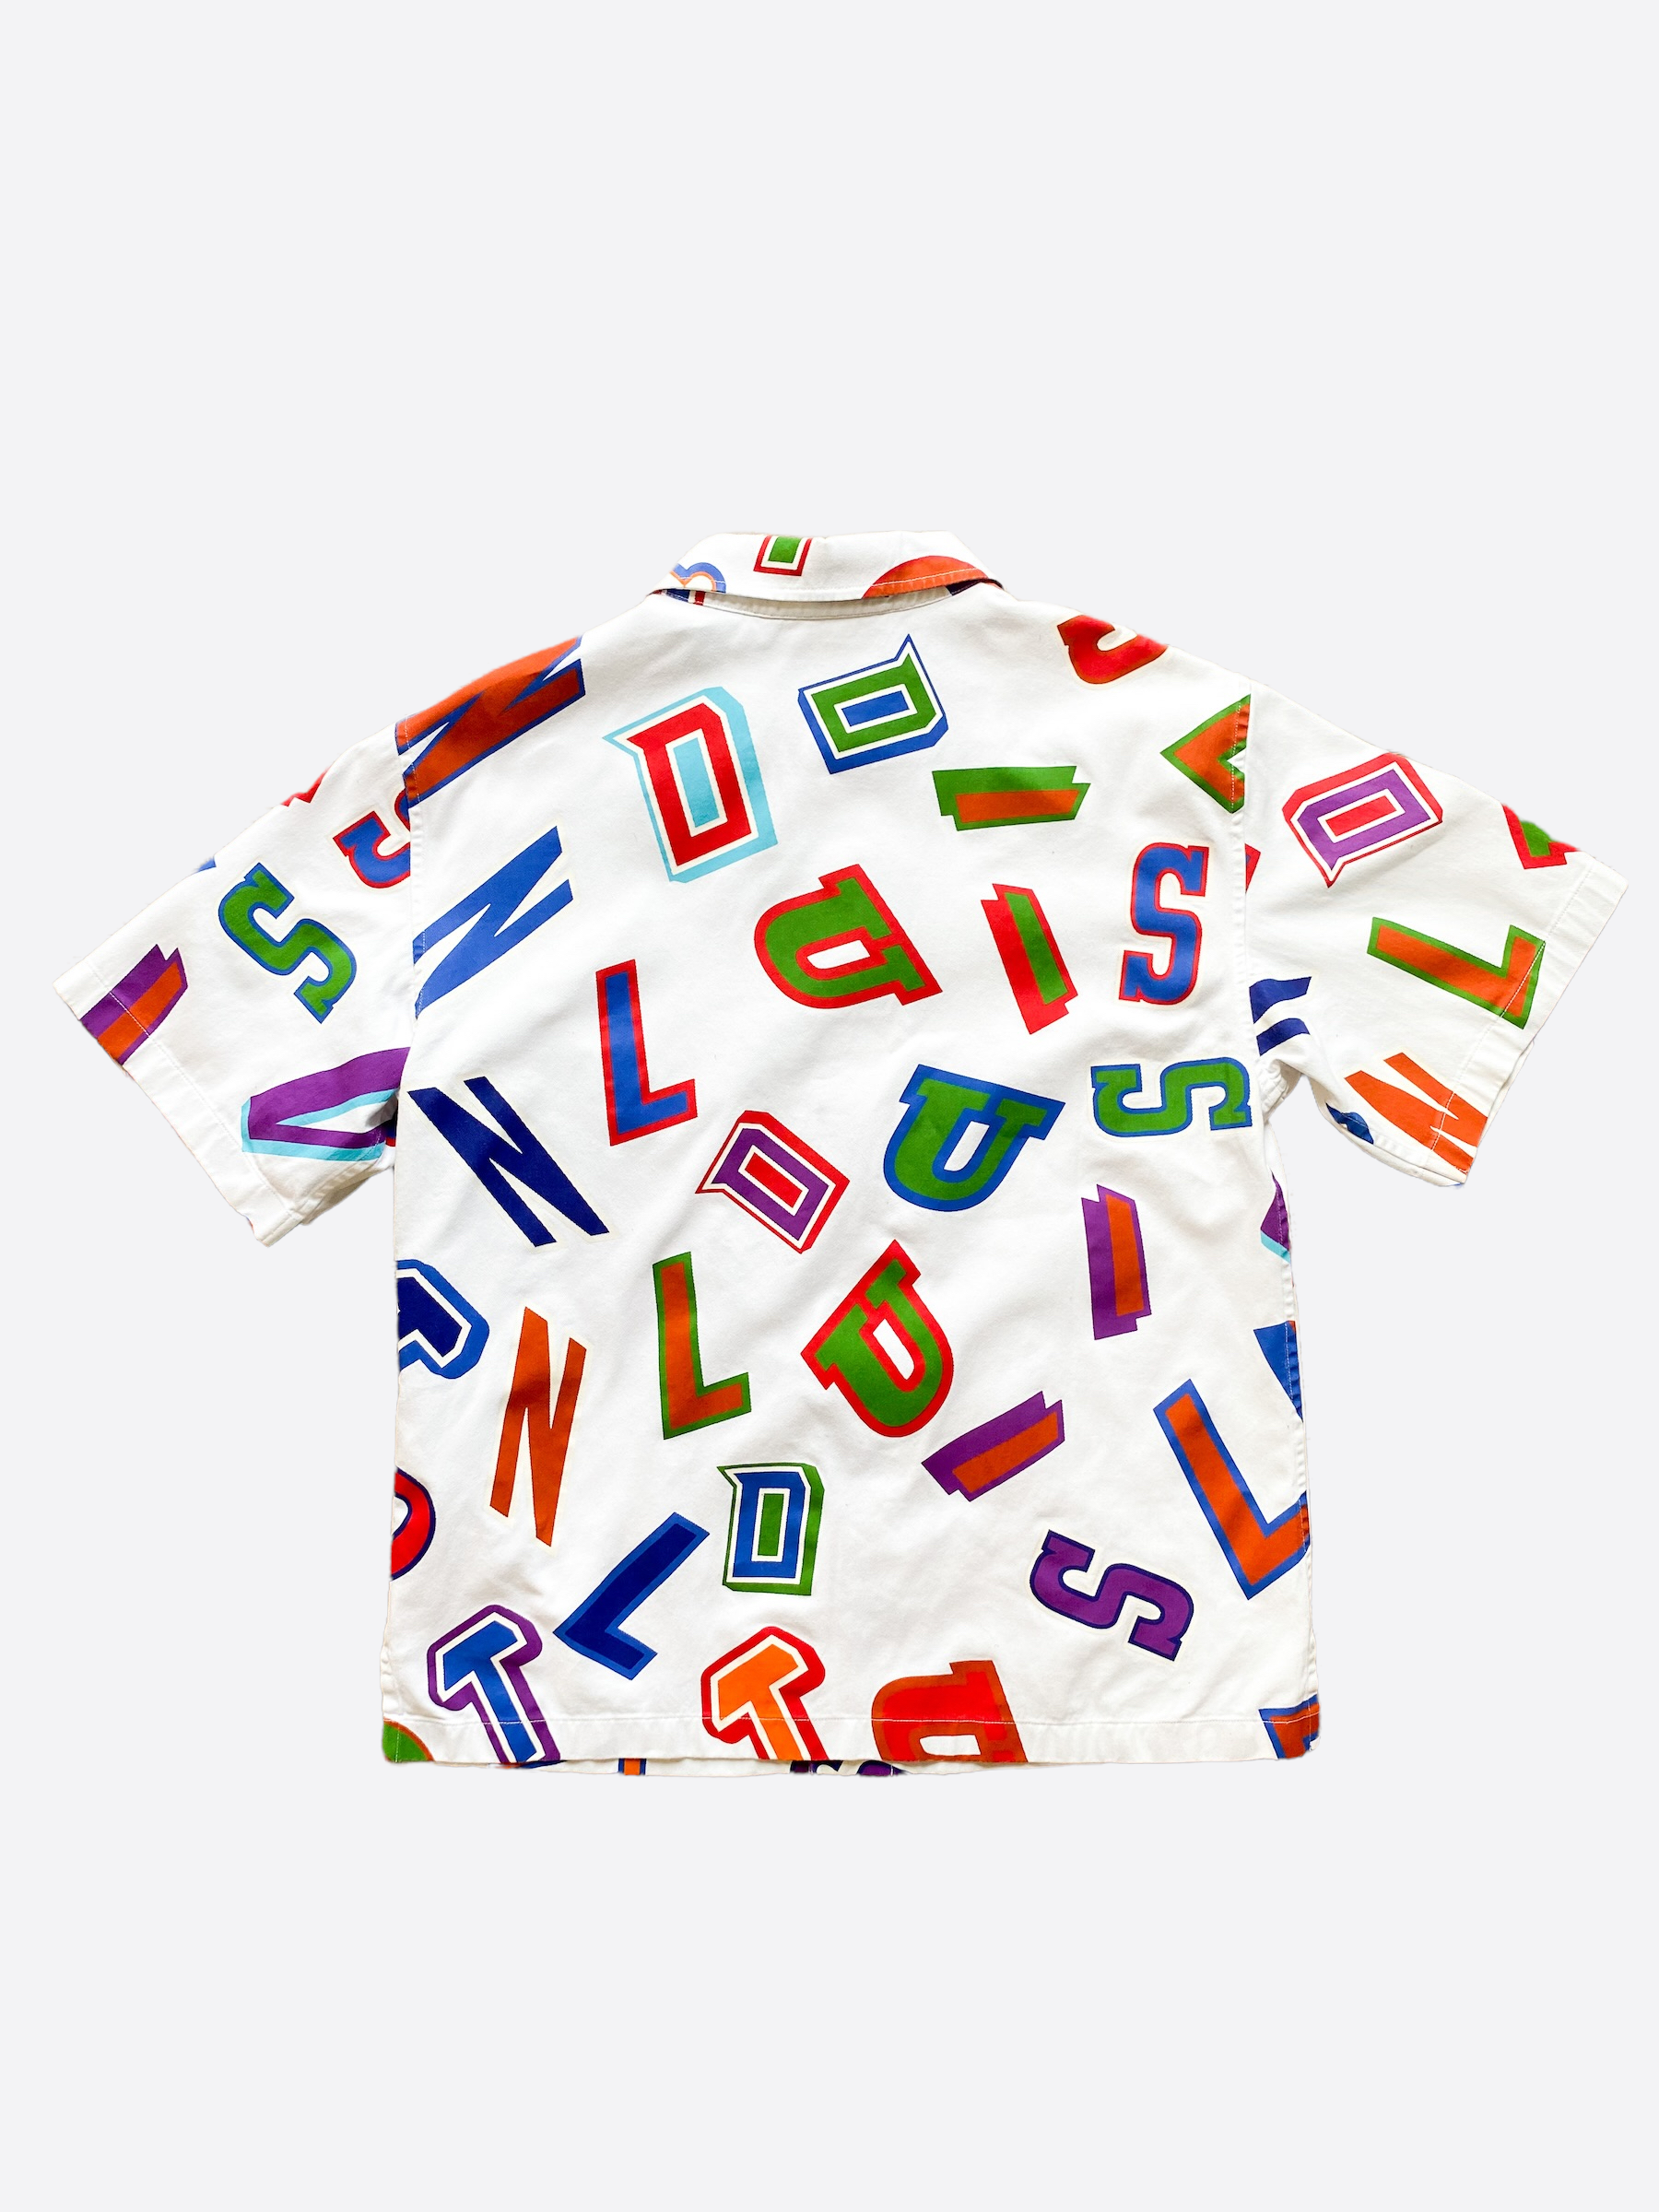 Louis Vuitton NBA Brown Multicolor Letters Button Up Shirt